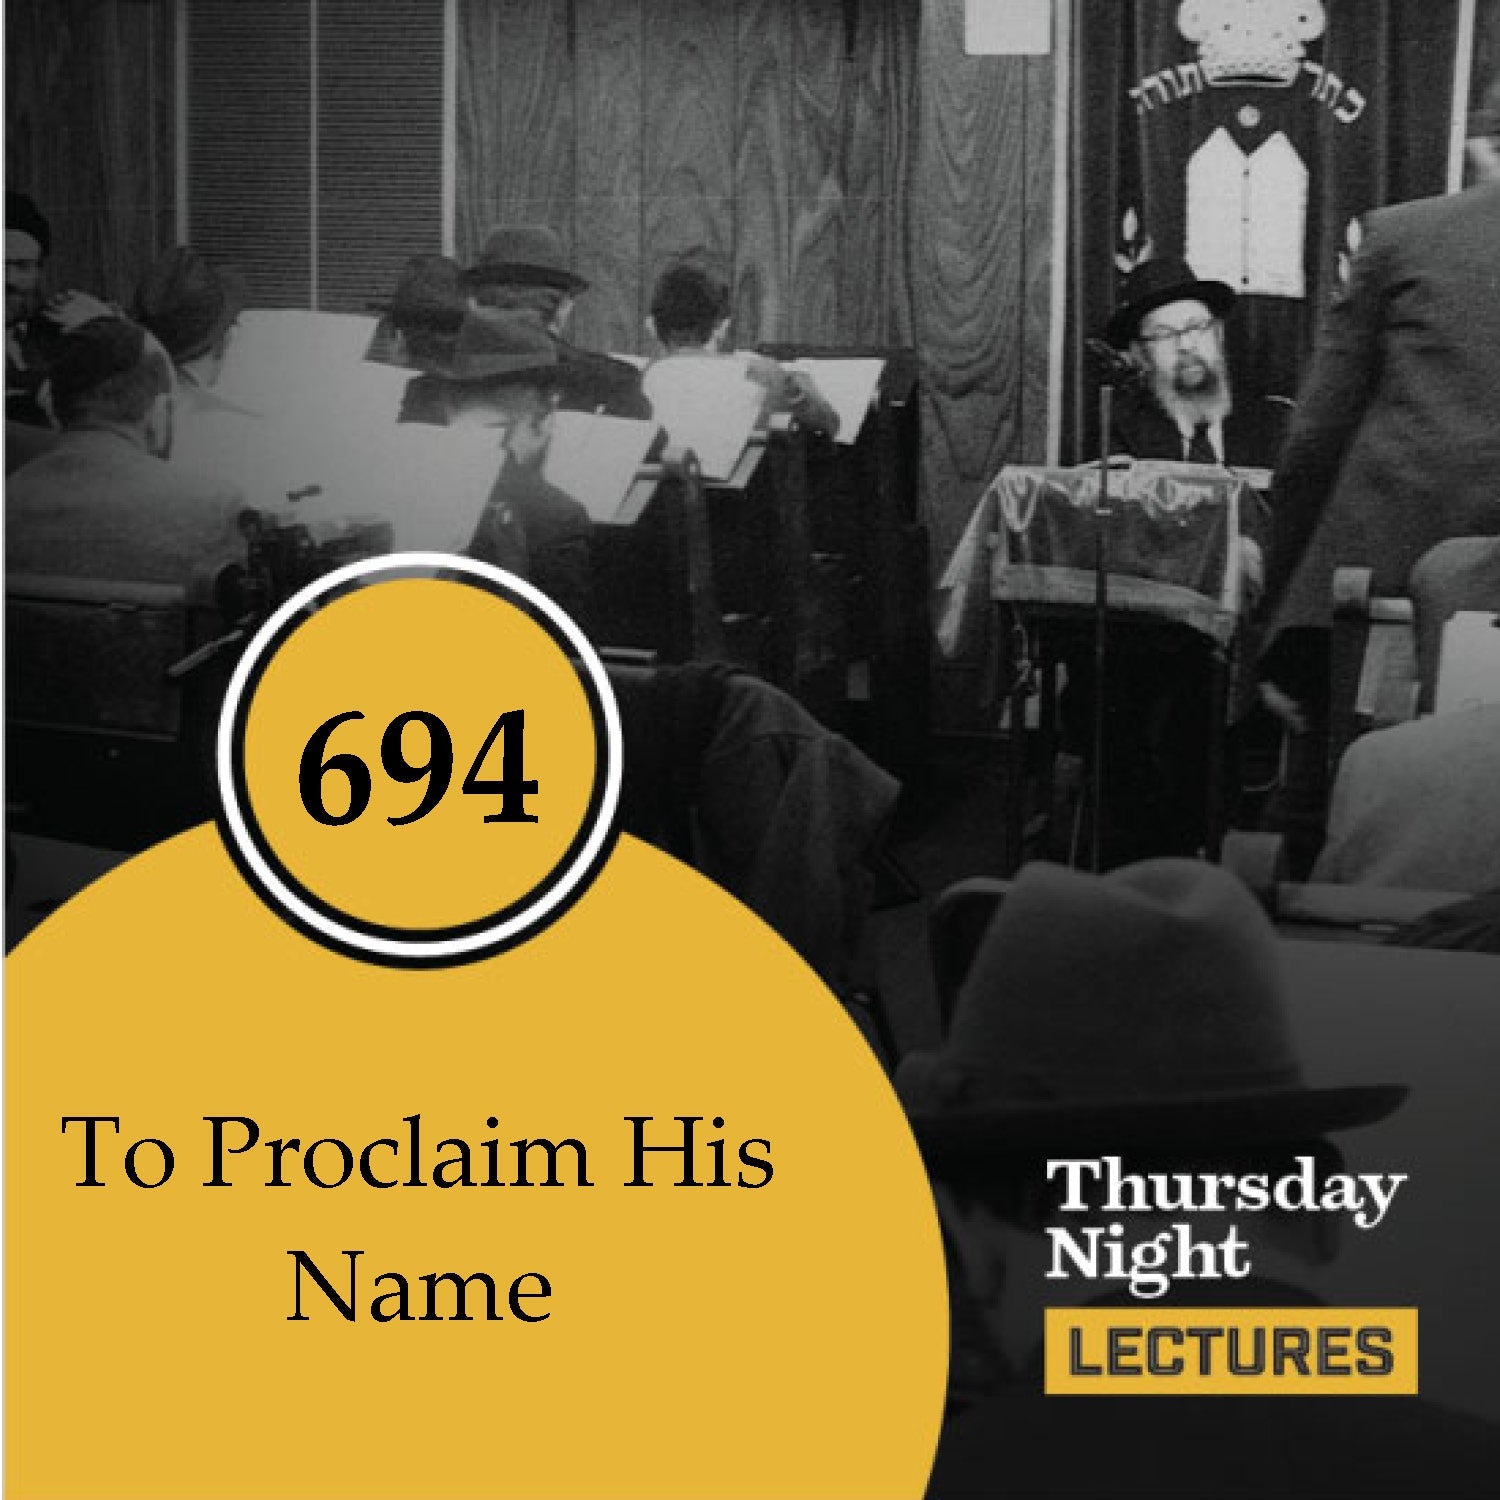 694 - To Proclaim His Name